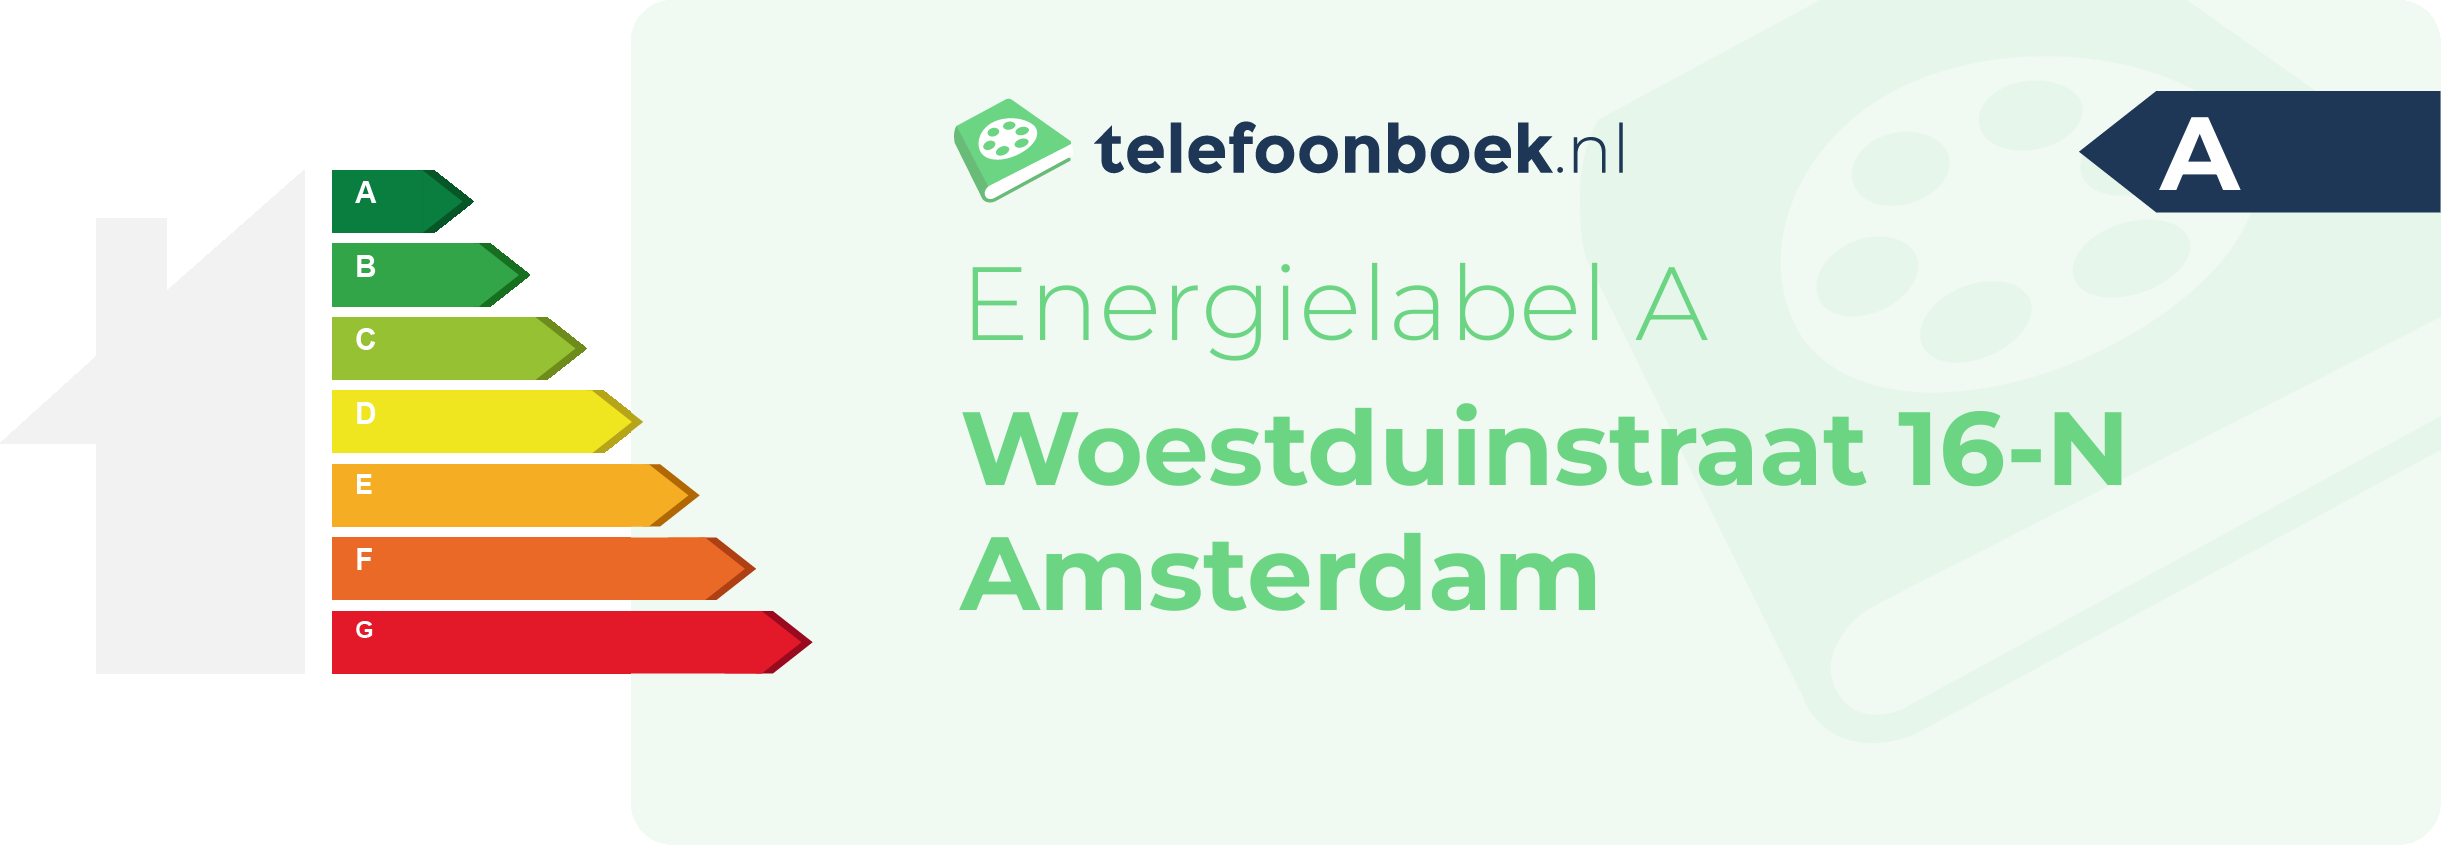 Energielabel Woestduinstraat 16-N Amsterdam